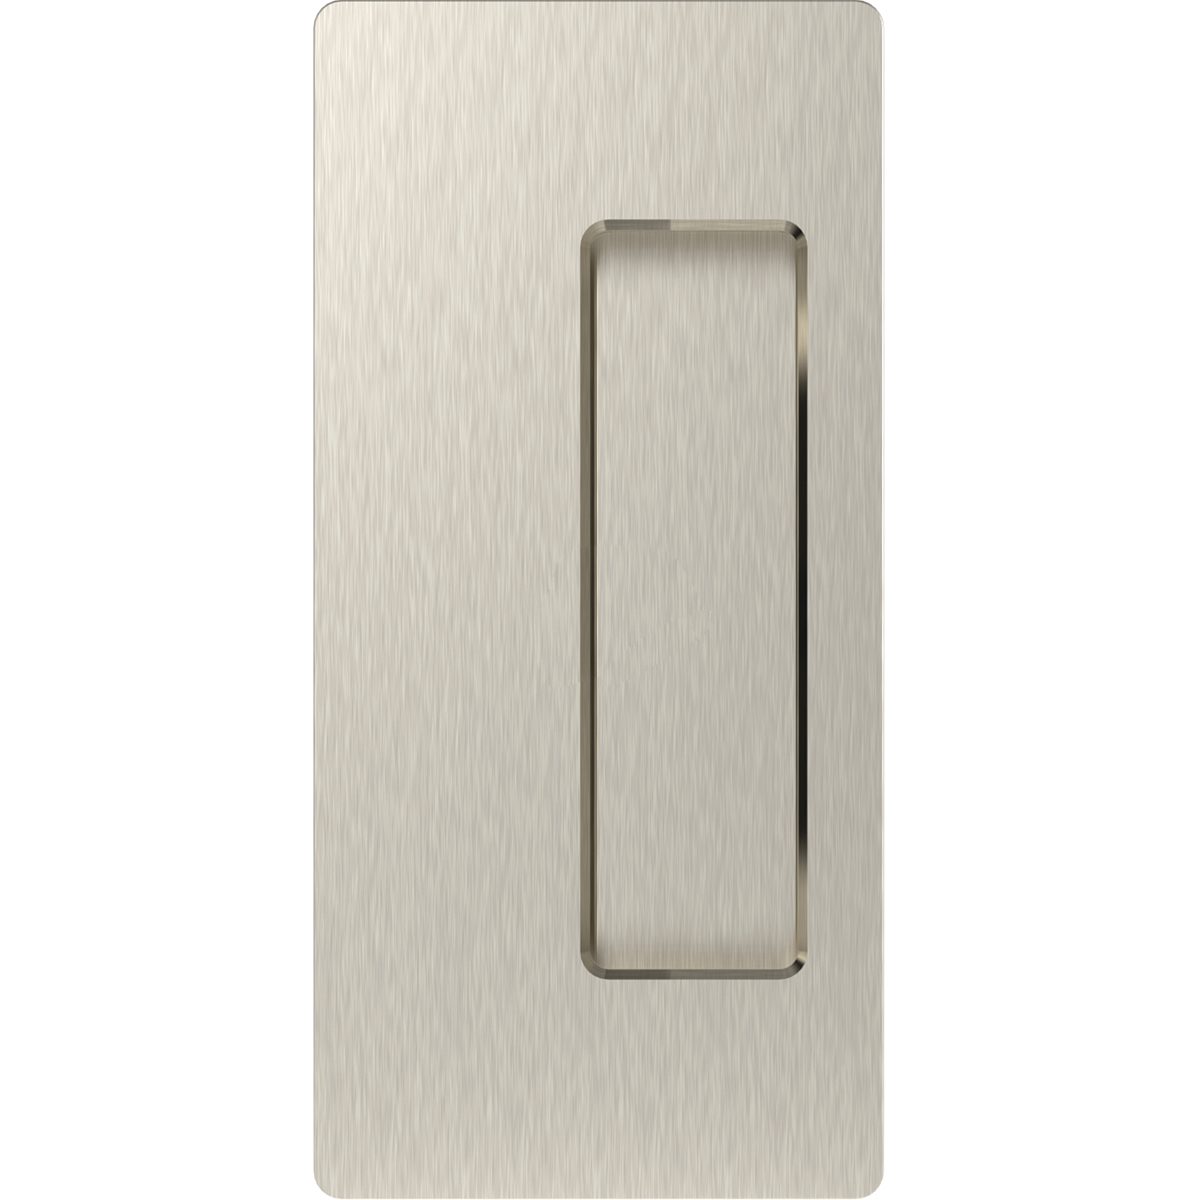 Cavity Sliders CL200 Passage Pocket Door Handle for 1-3/8" D alt 1